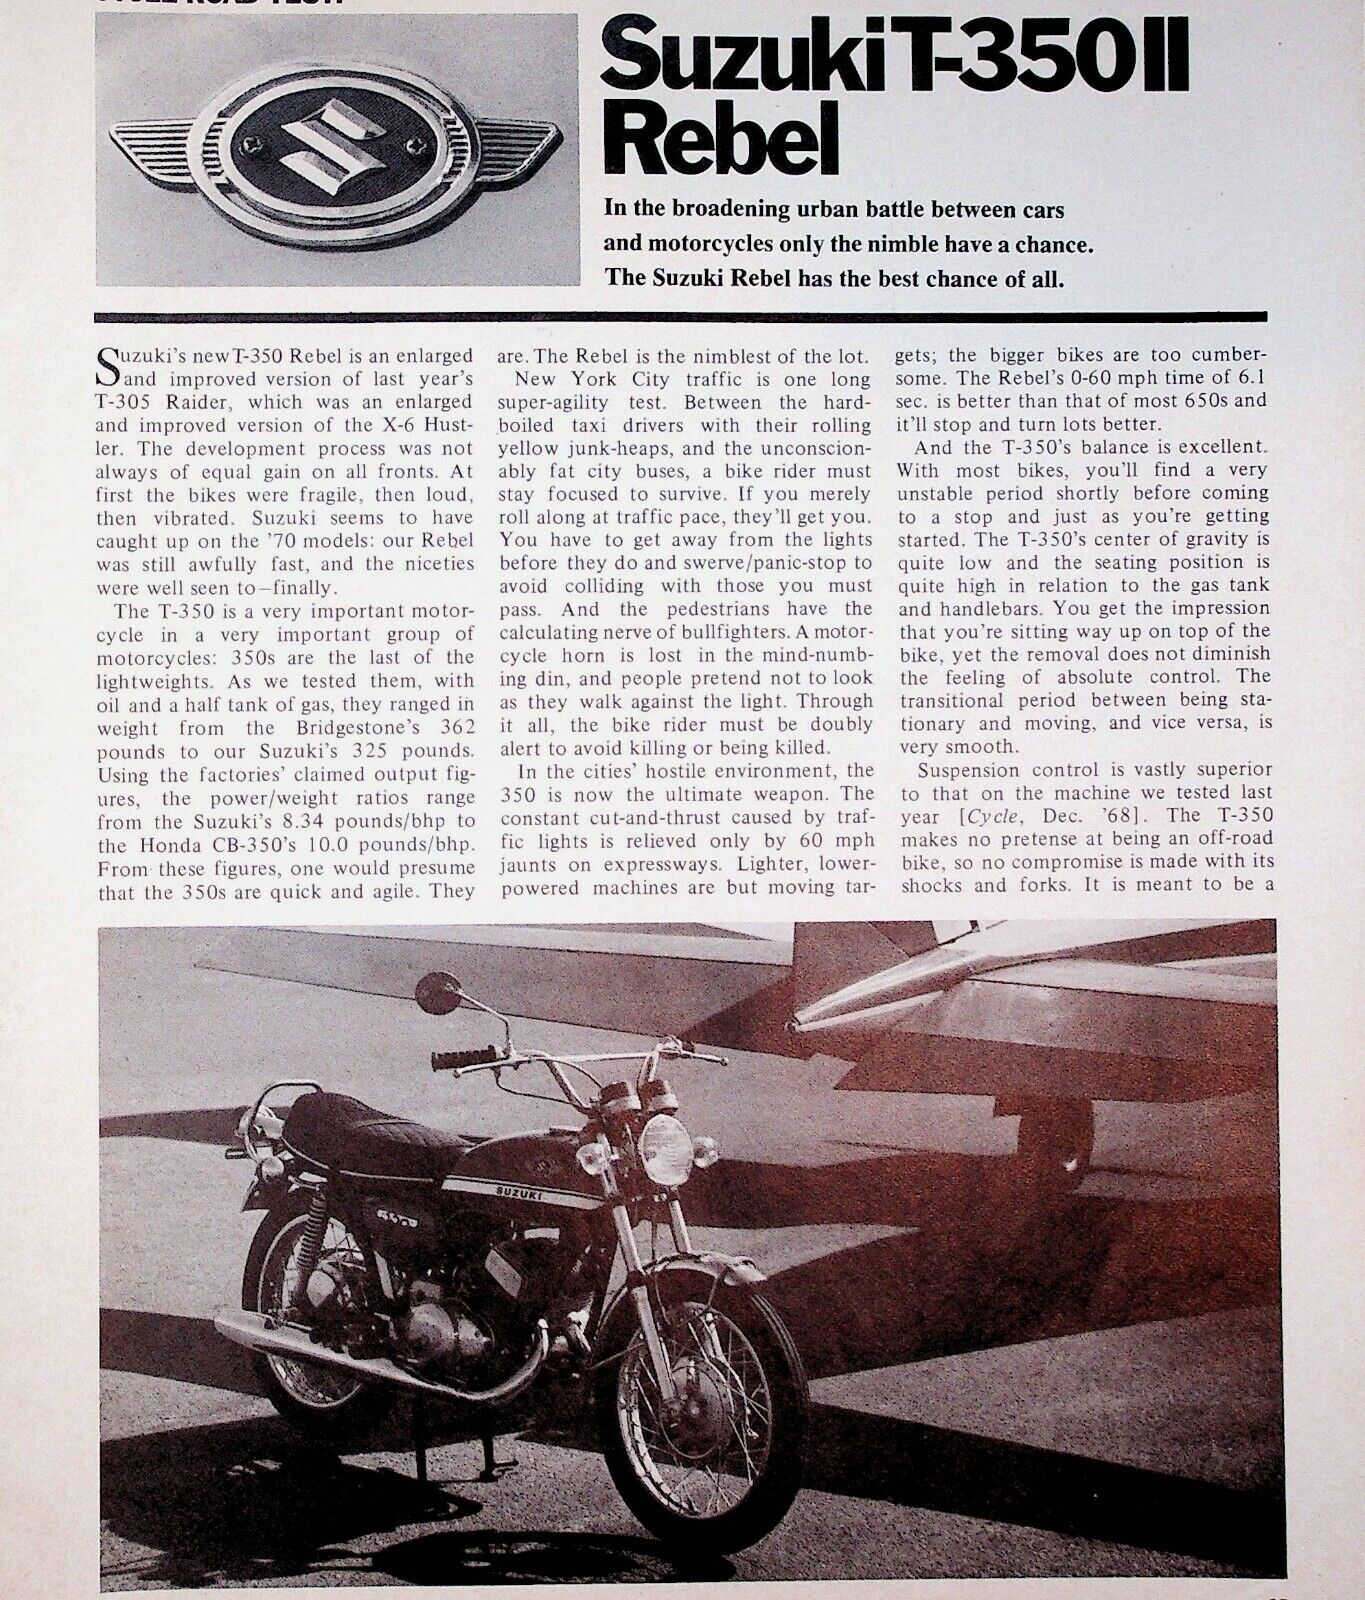 1970 Suzuki T-350 II Rebel - 4-Page Vintage Motorcycle Road Test Article